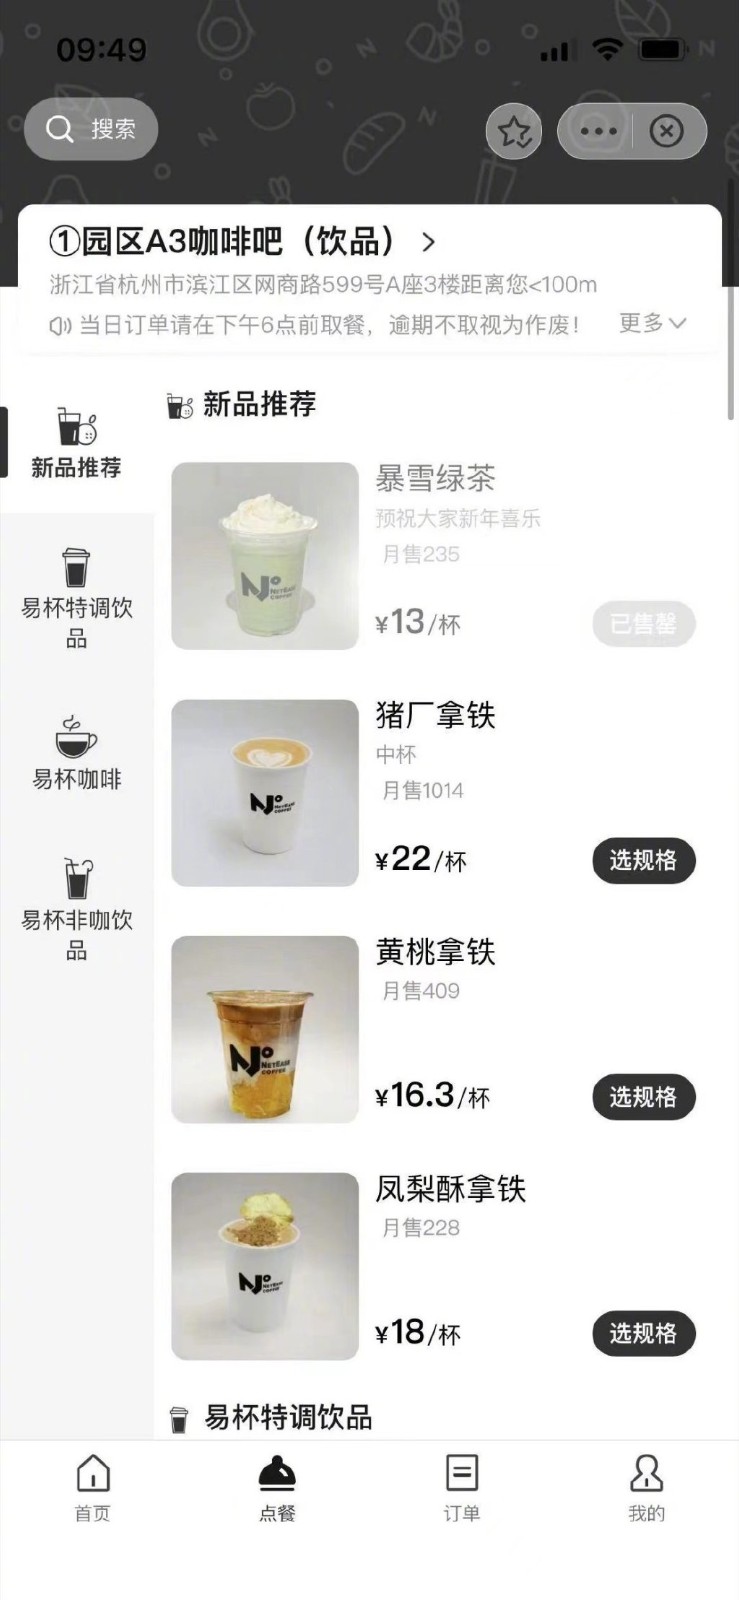 网传网易咖啡厅推出“暴雪绿茶”饮品 订单火爆已售罄